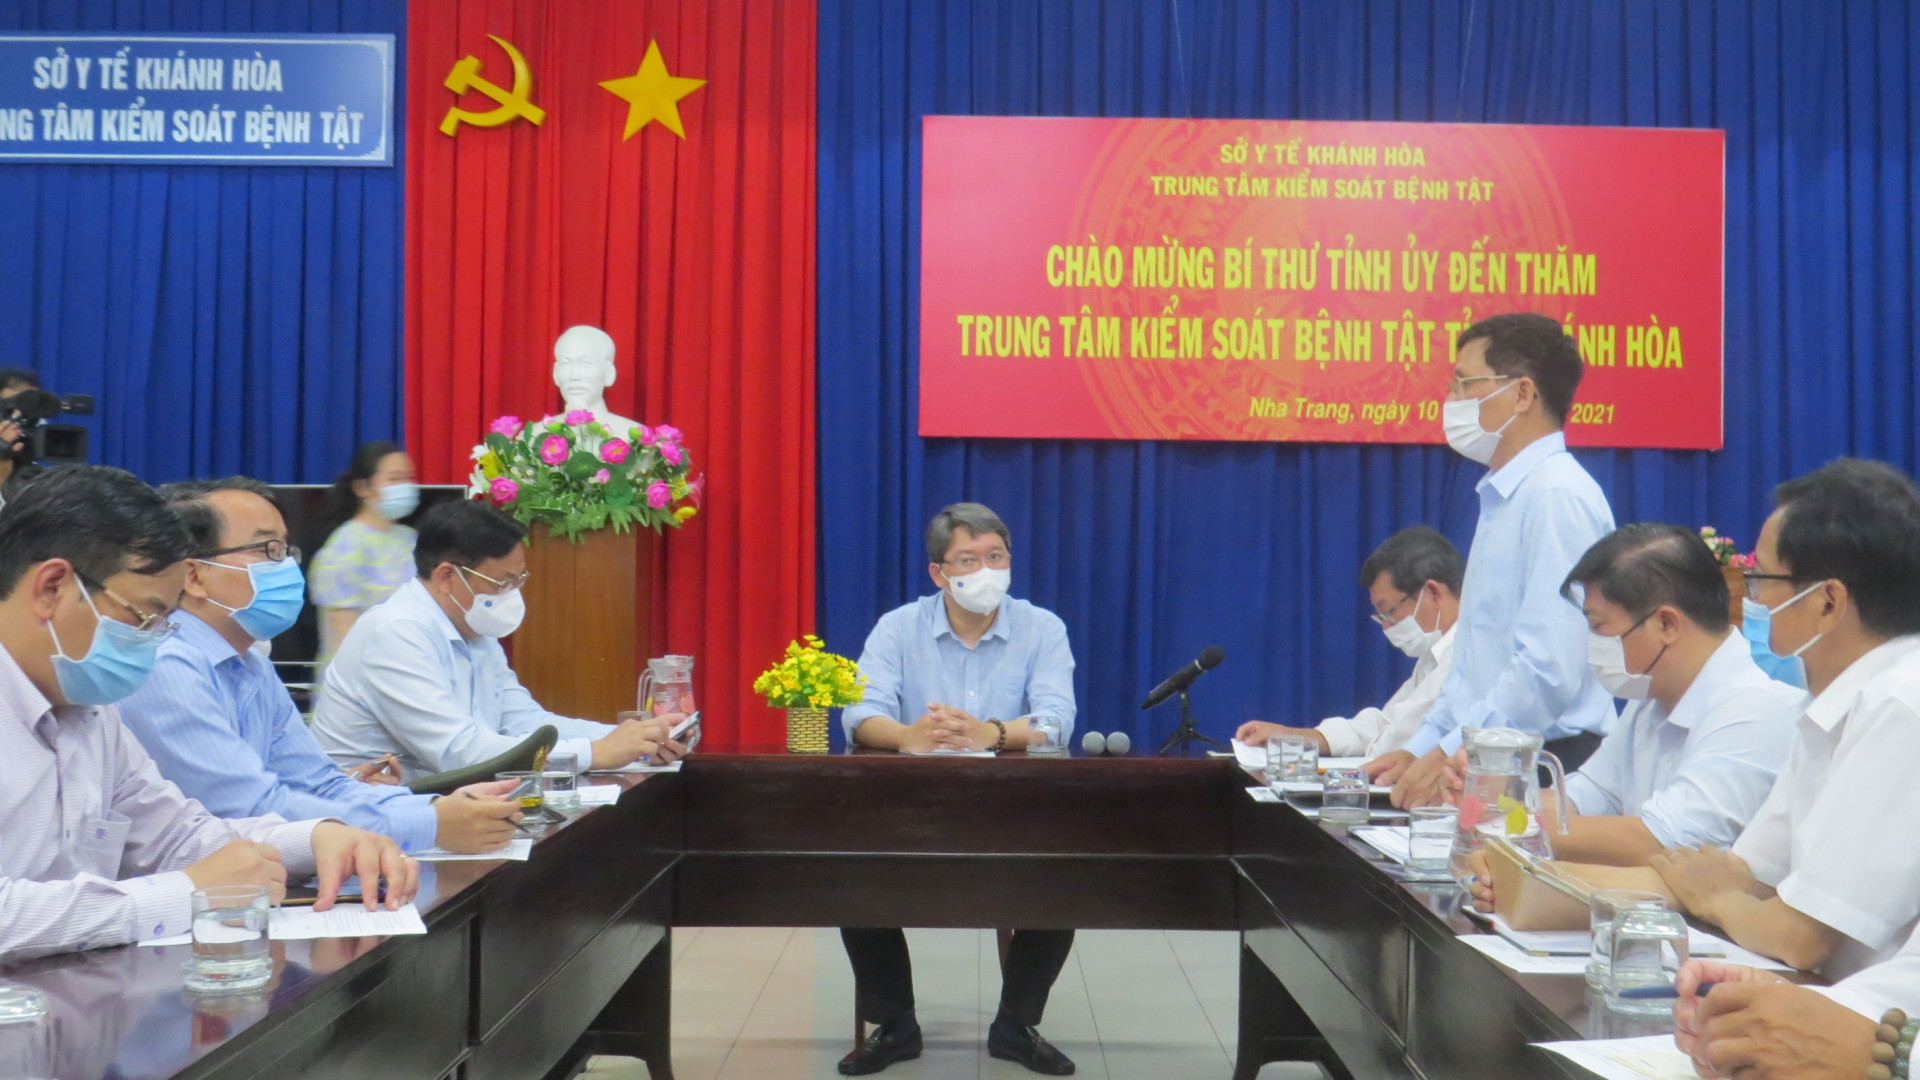 Bí thư Nguyễn Hải Ninh kiểm tra công tác chống dịch tại Trung tâm Kiểm soát bệnh tật tỉnh Khánh Hoà